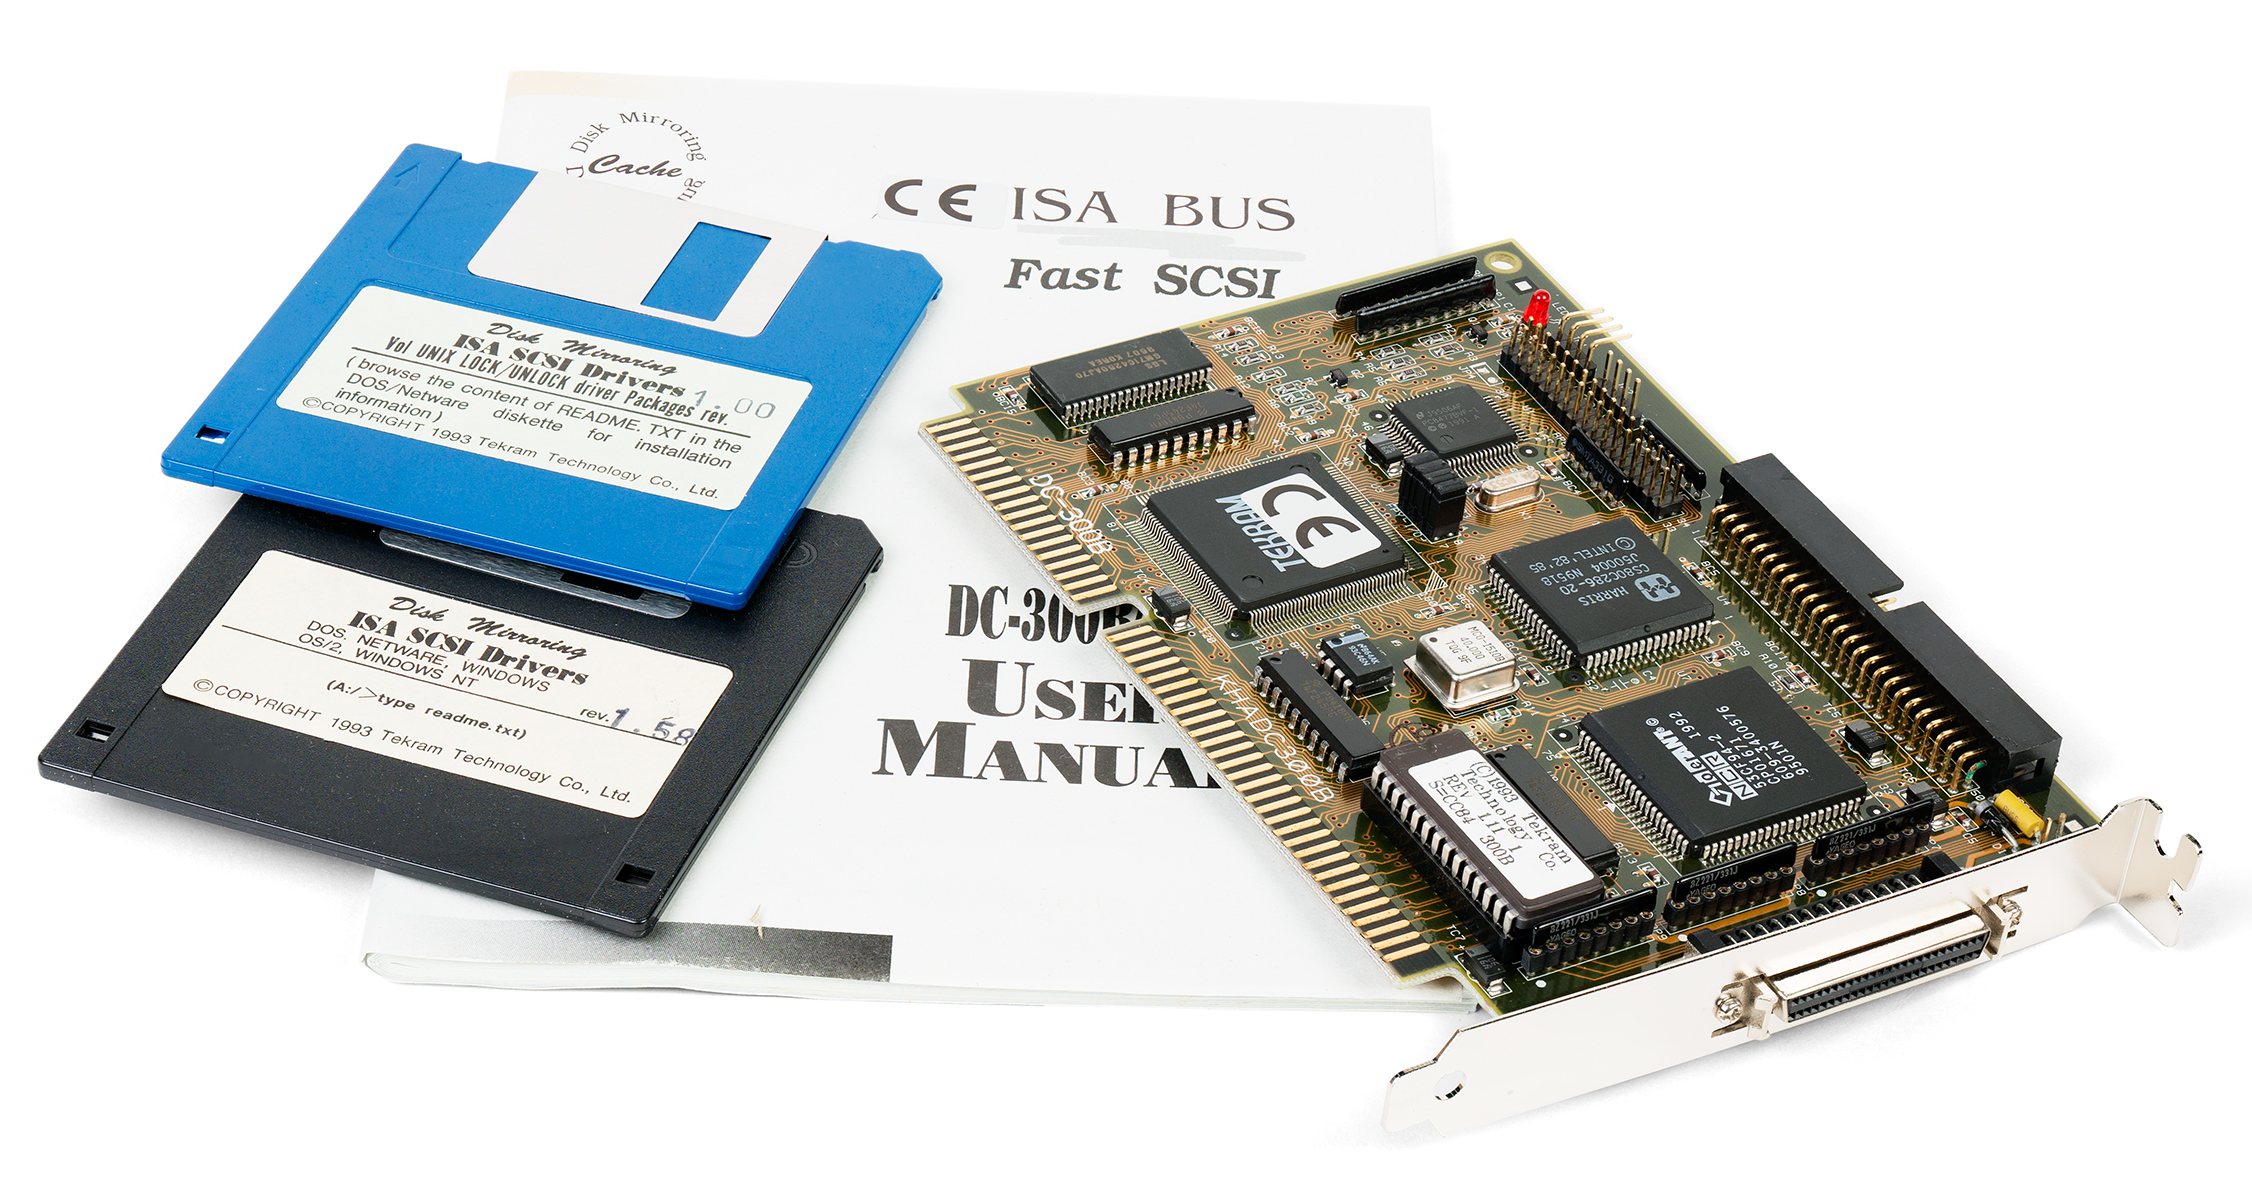 Tekram DC-300B Fast SCSI ISA controller